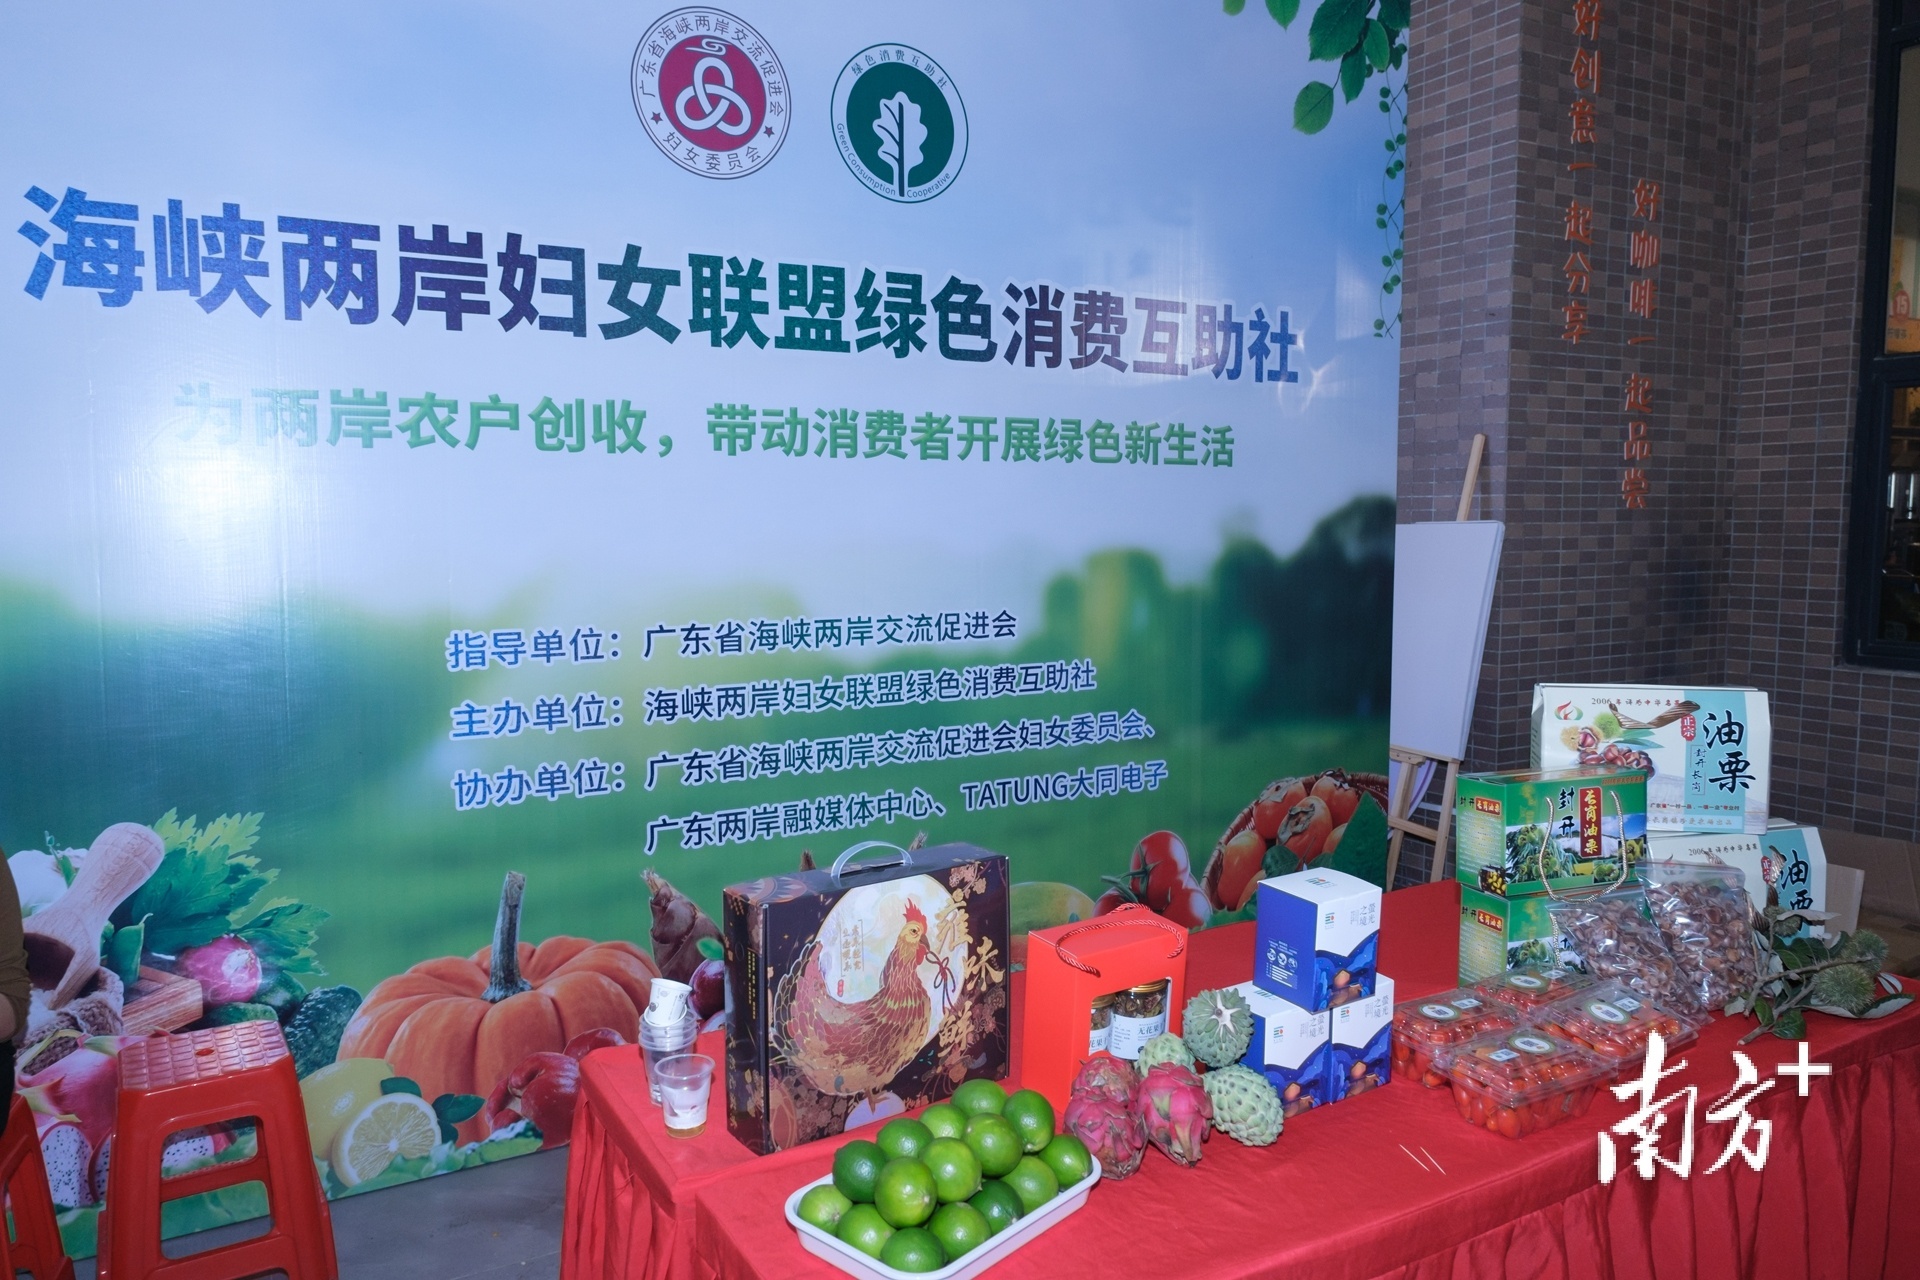 当天还举行烹饪体验活动以及复刻青春晚会，促进台湾青年和本地青年联谊交流。